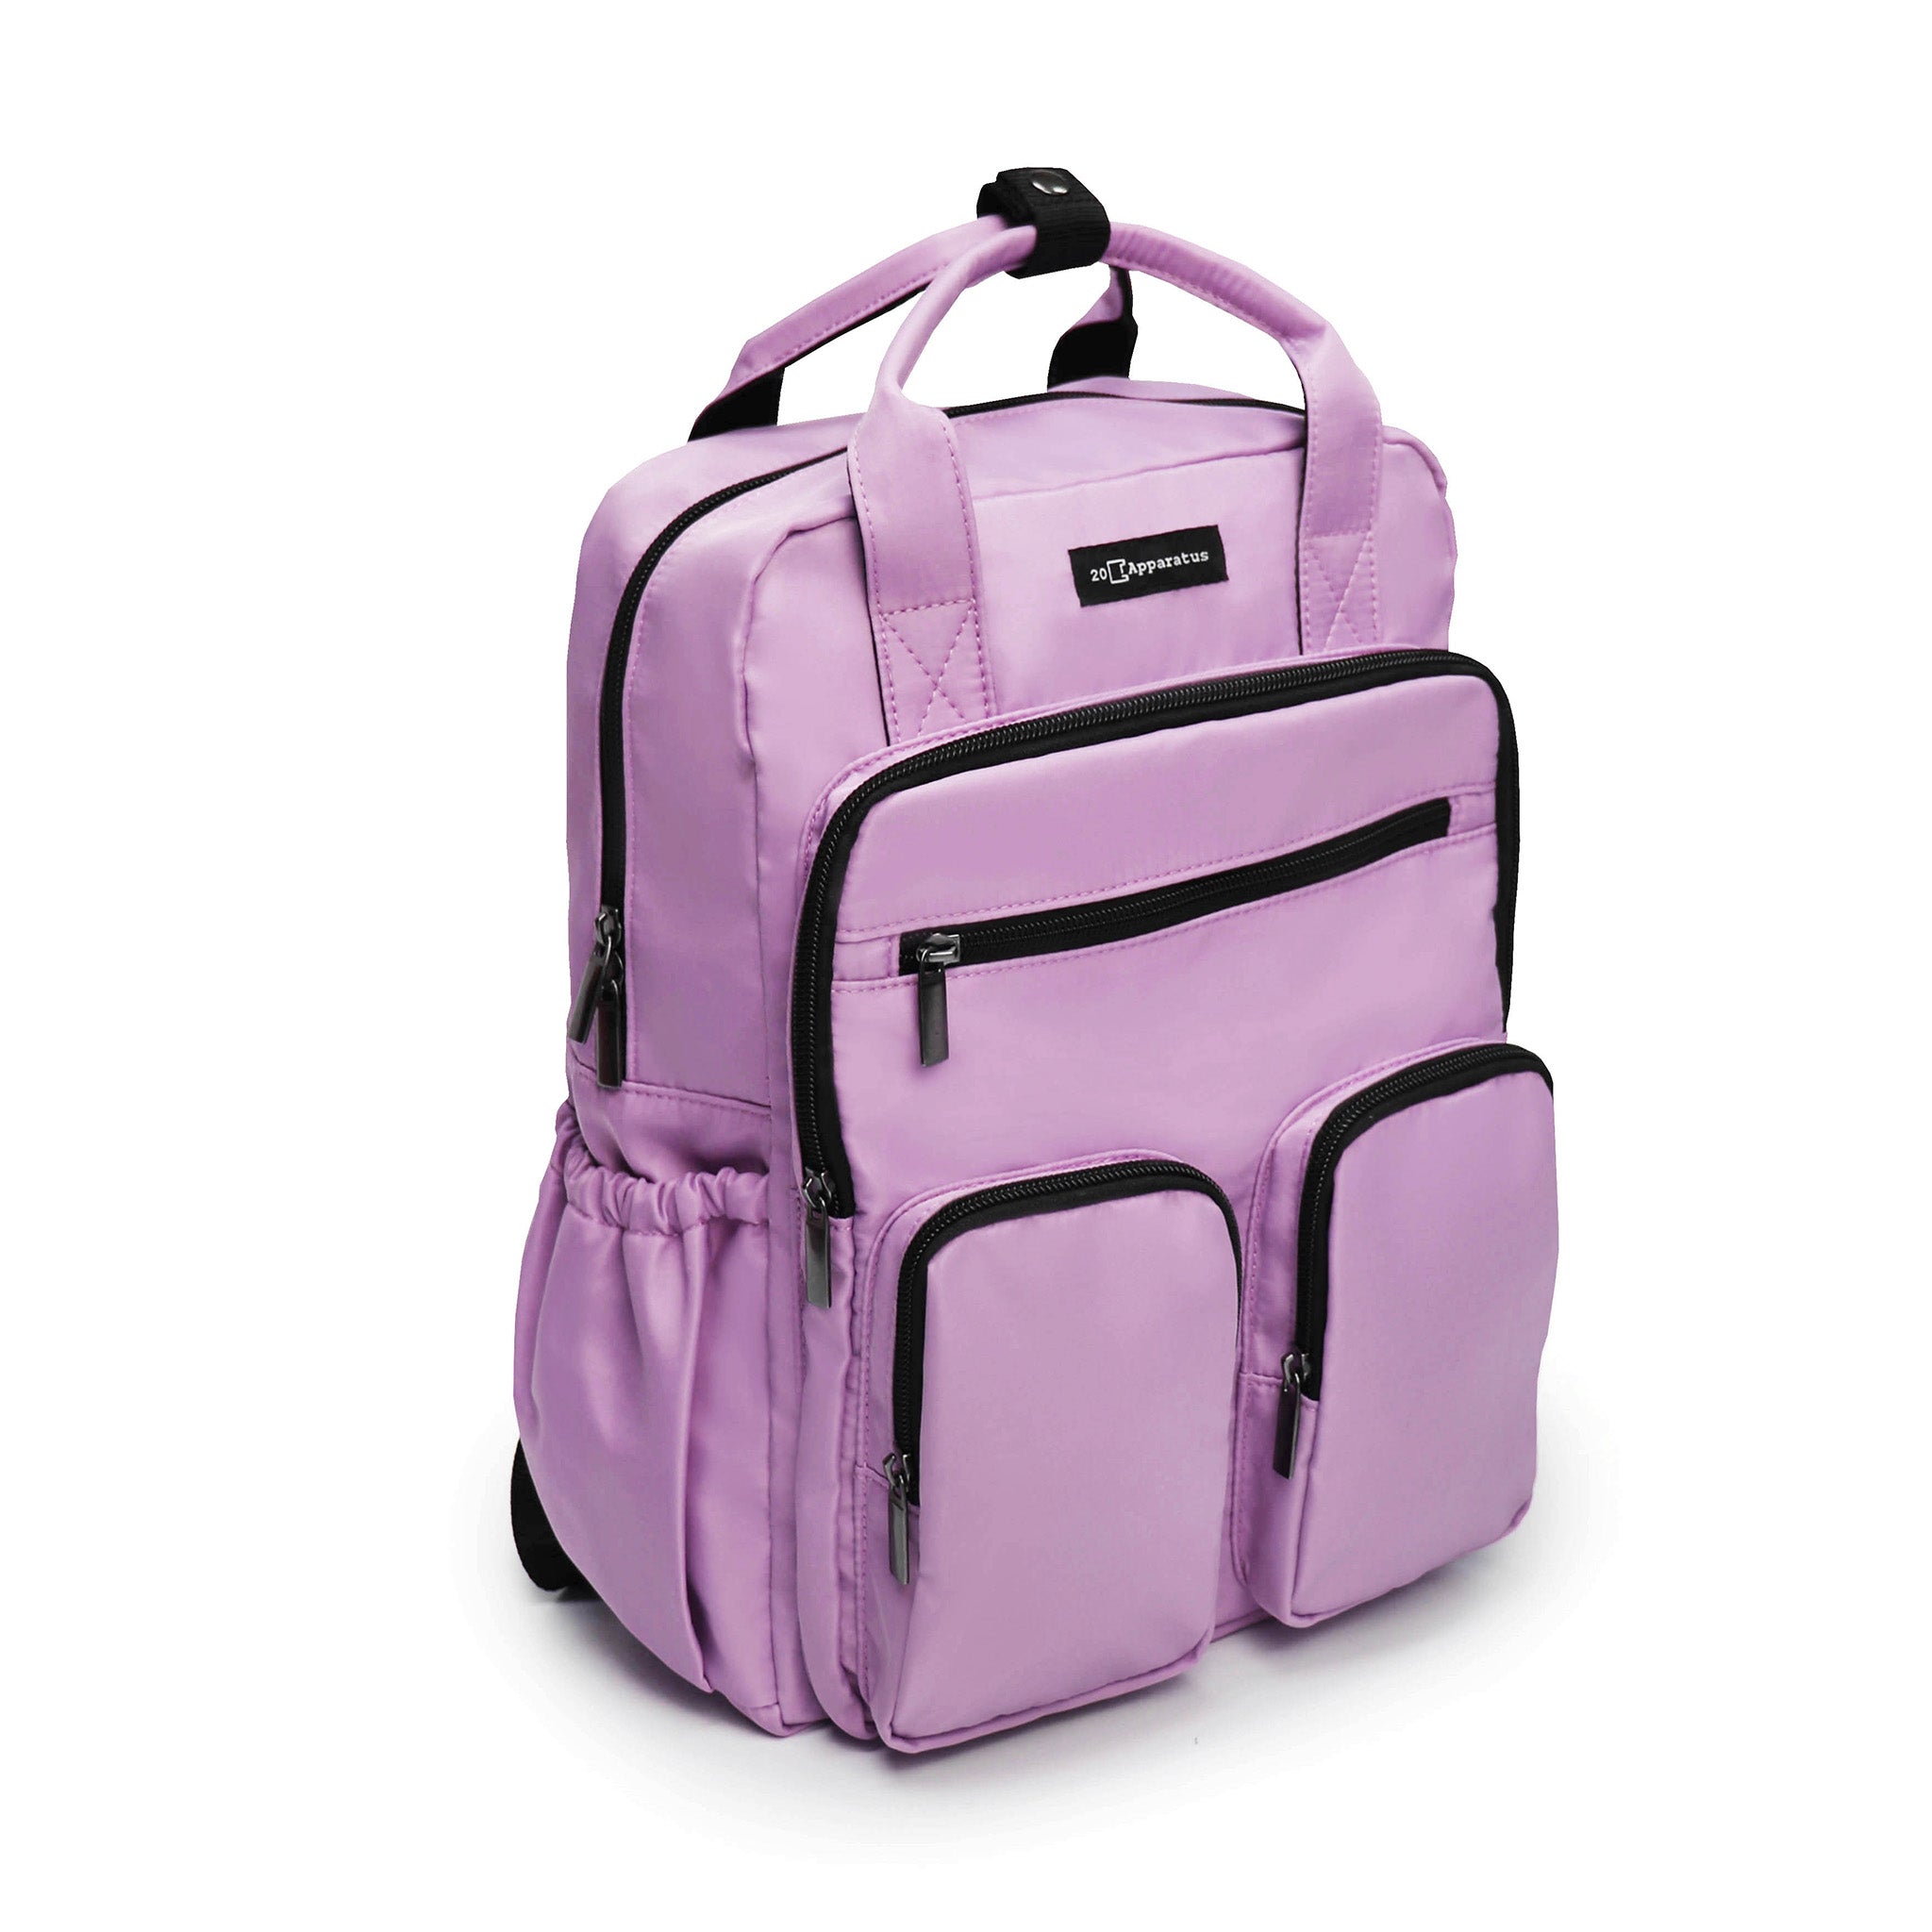 M-Pockets Backpack